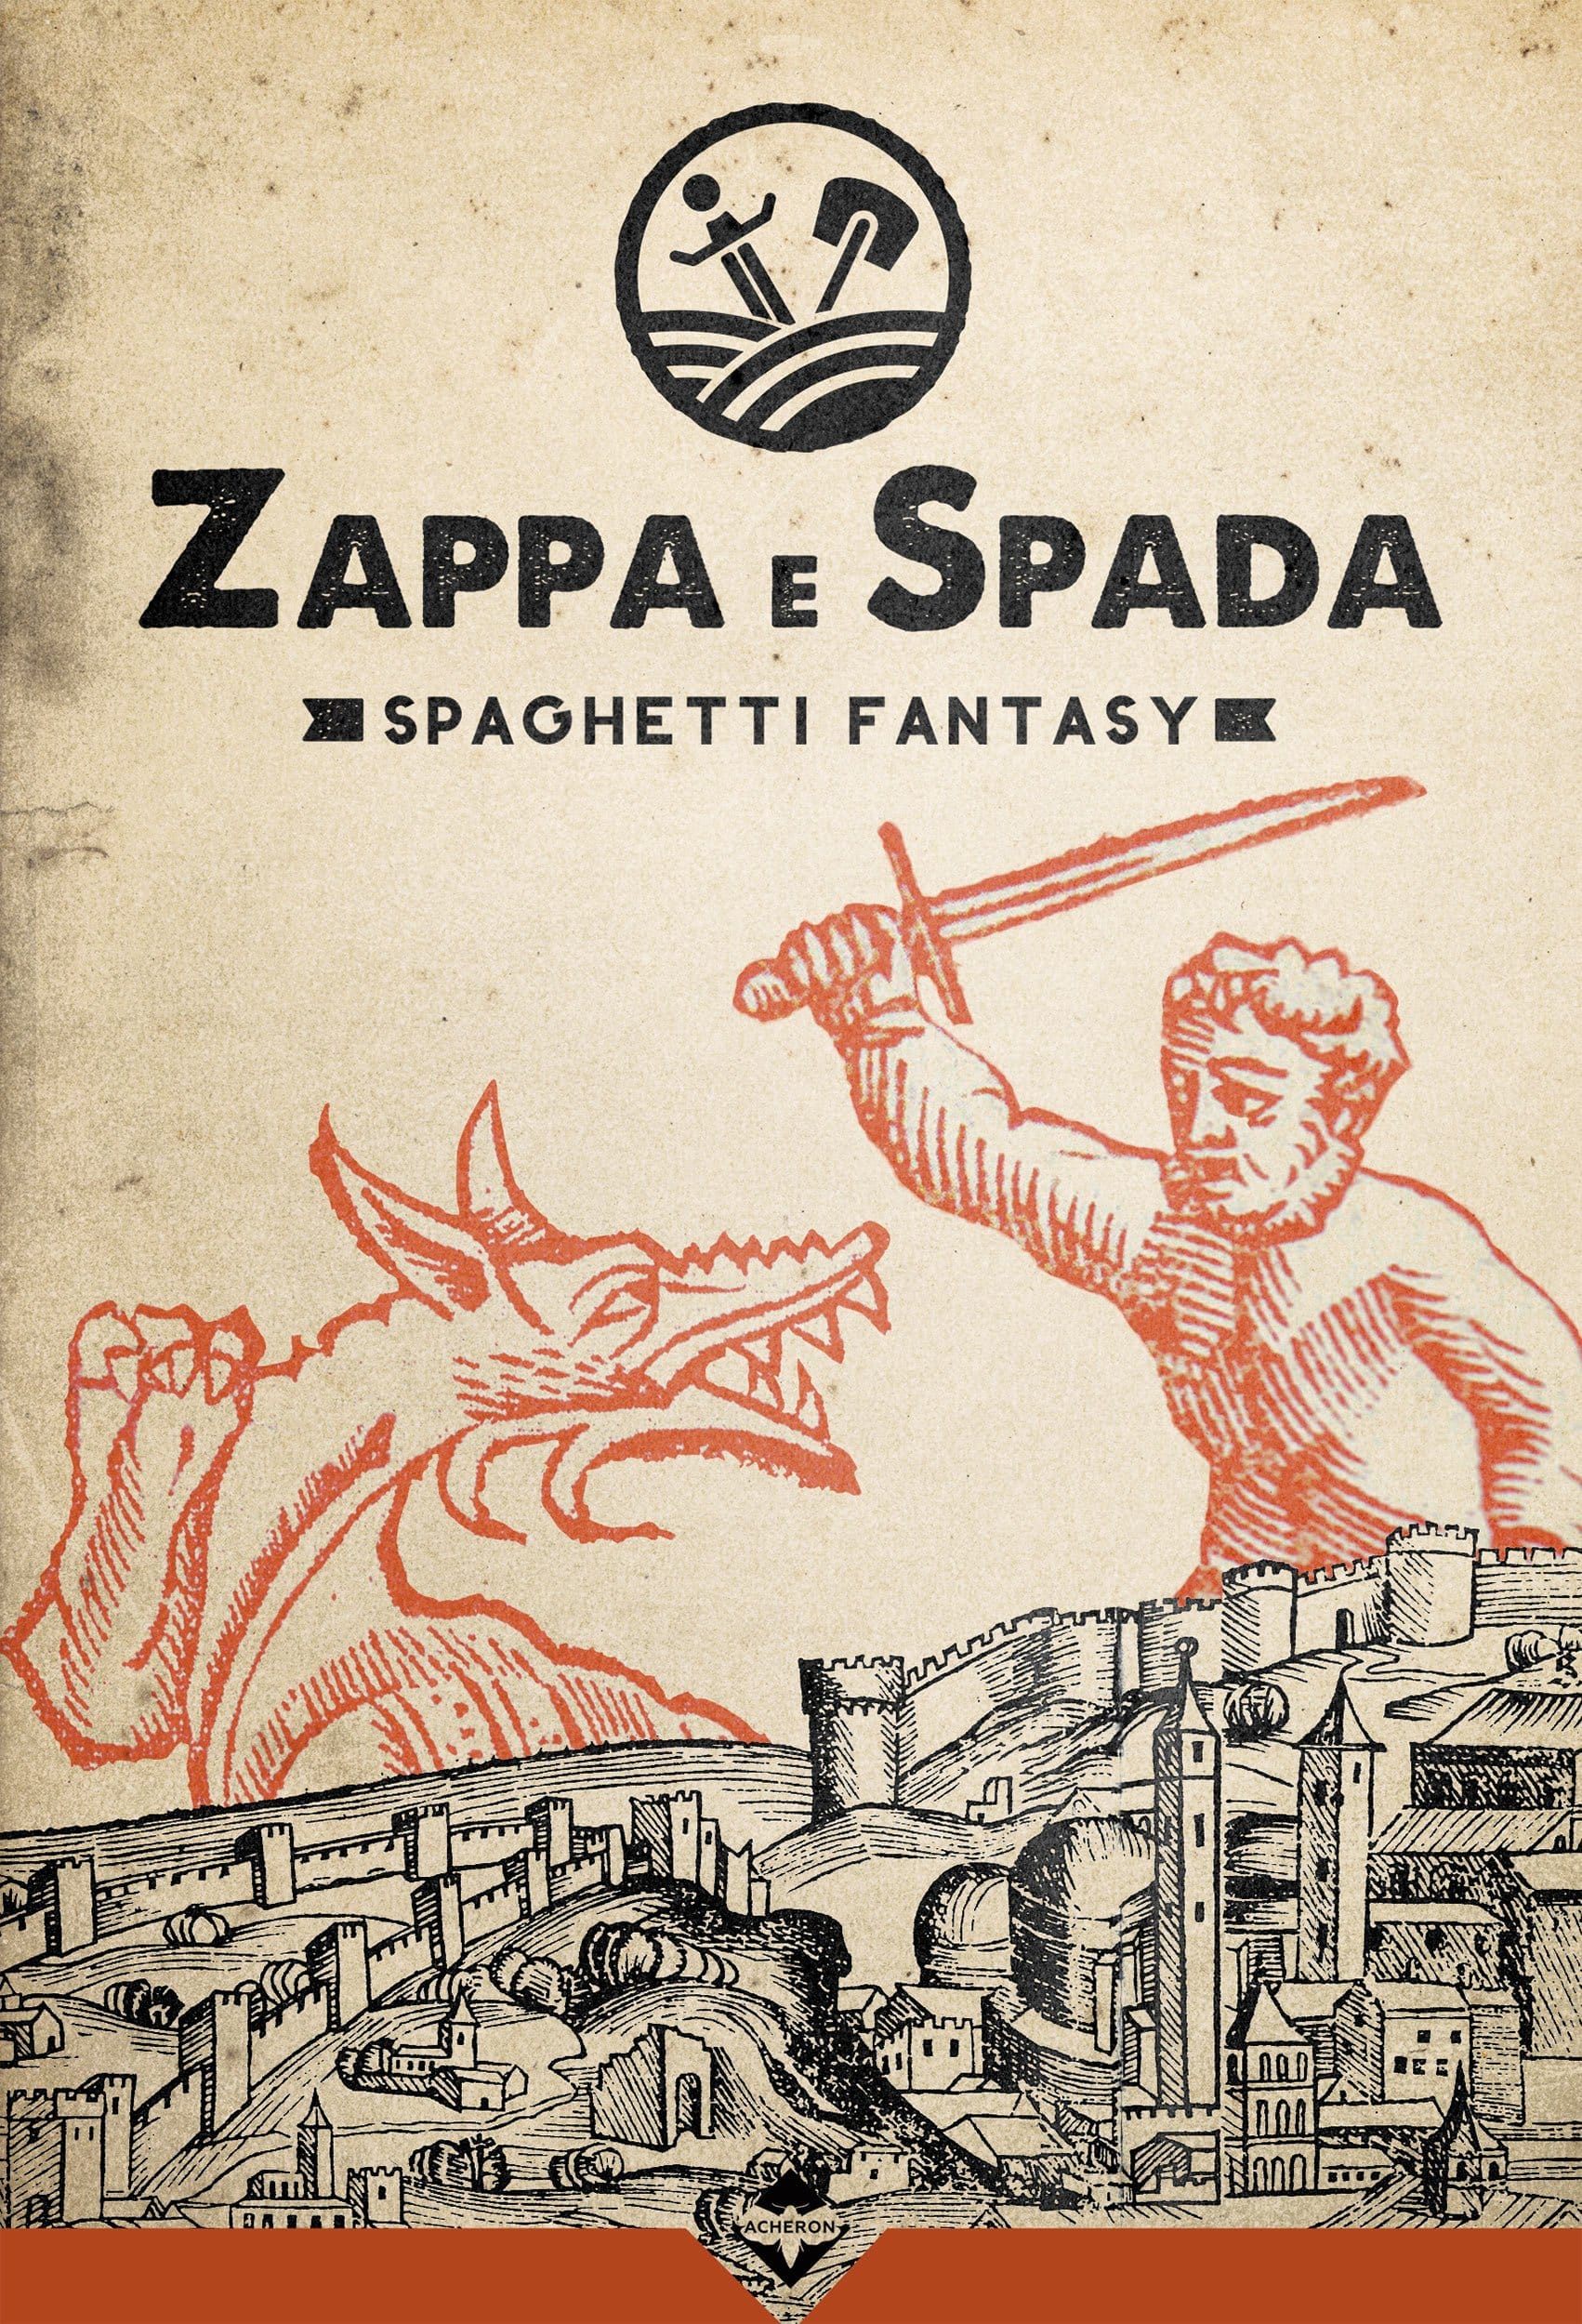 Zappa e spada